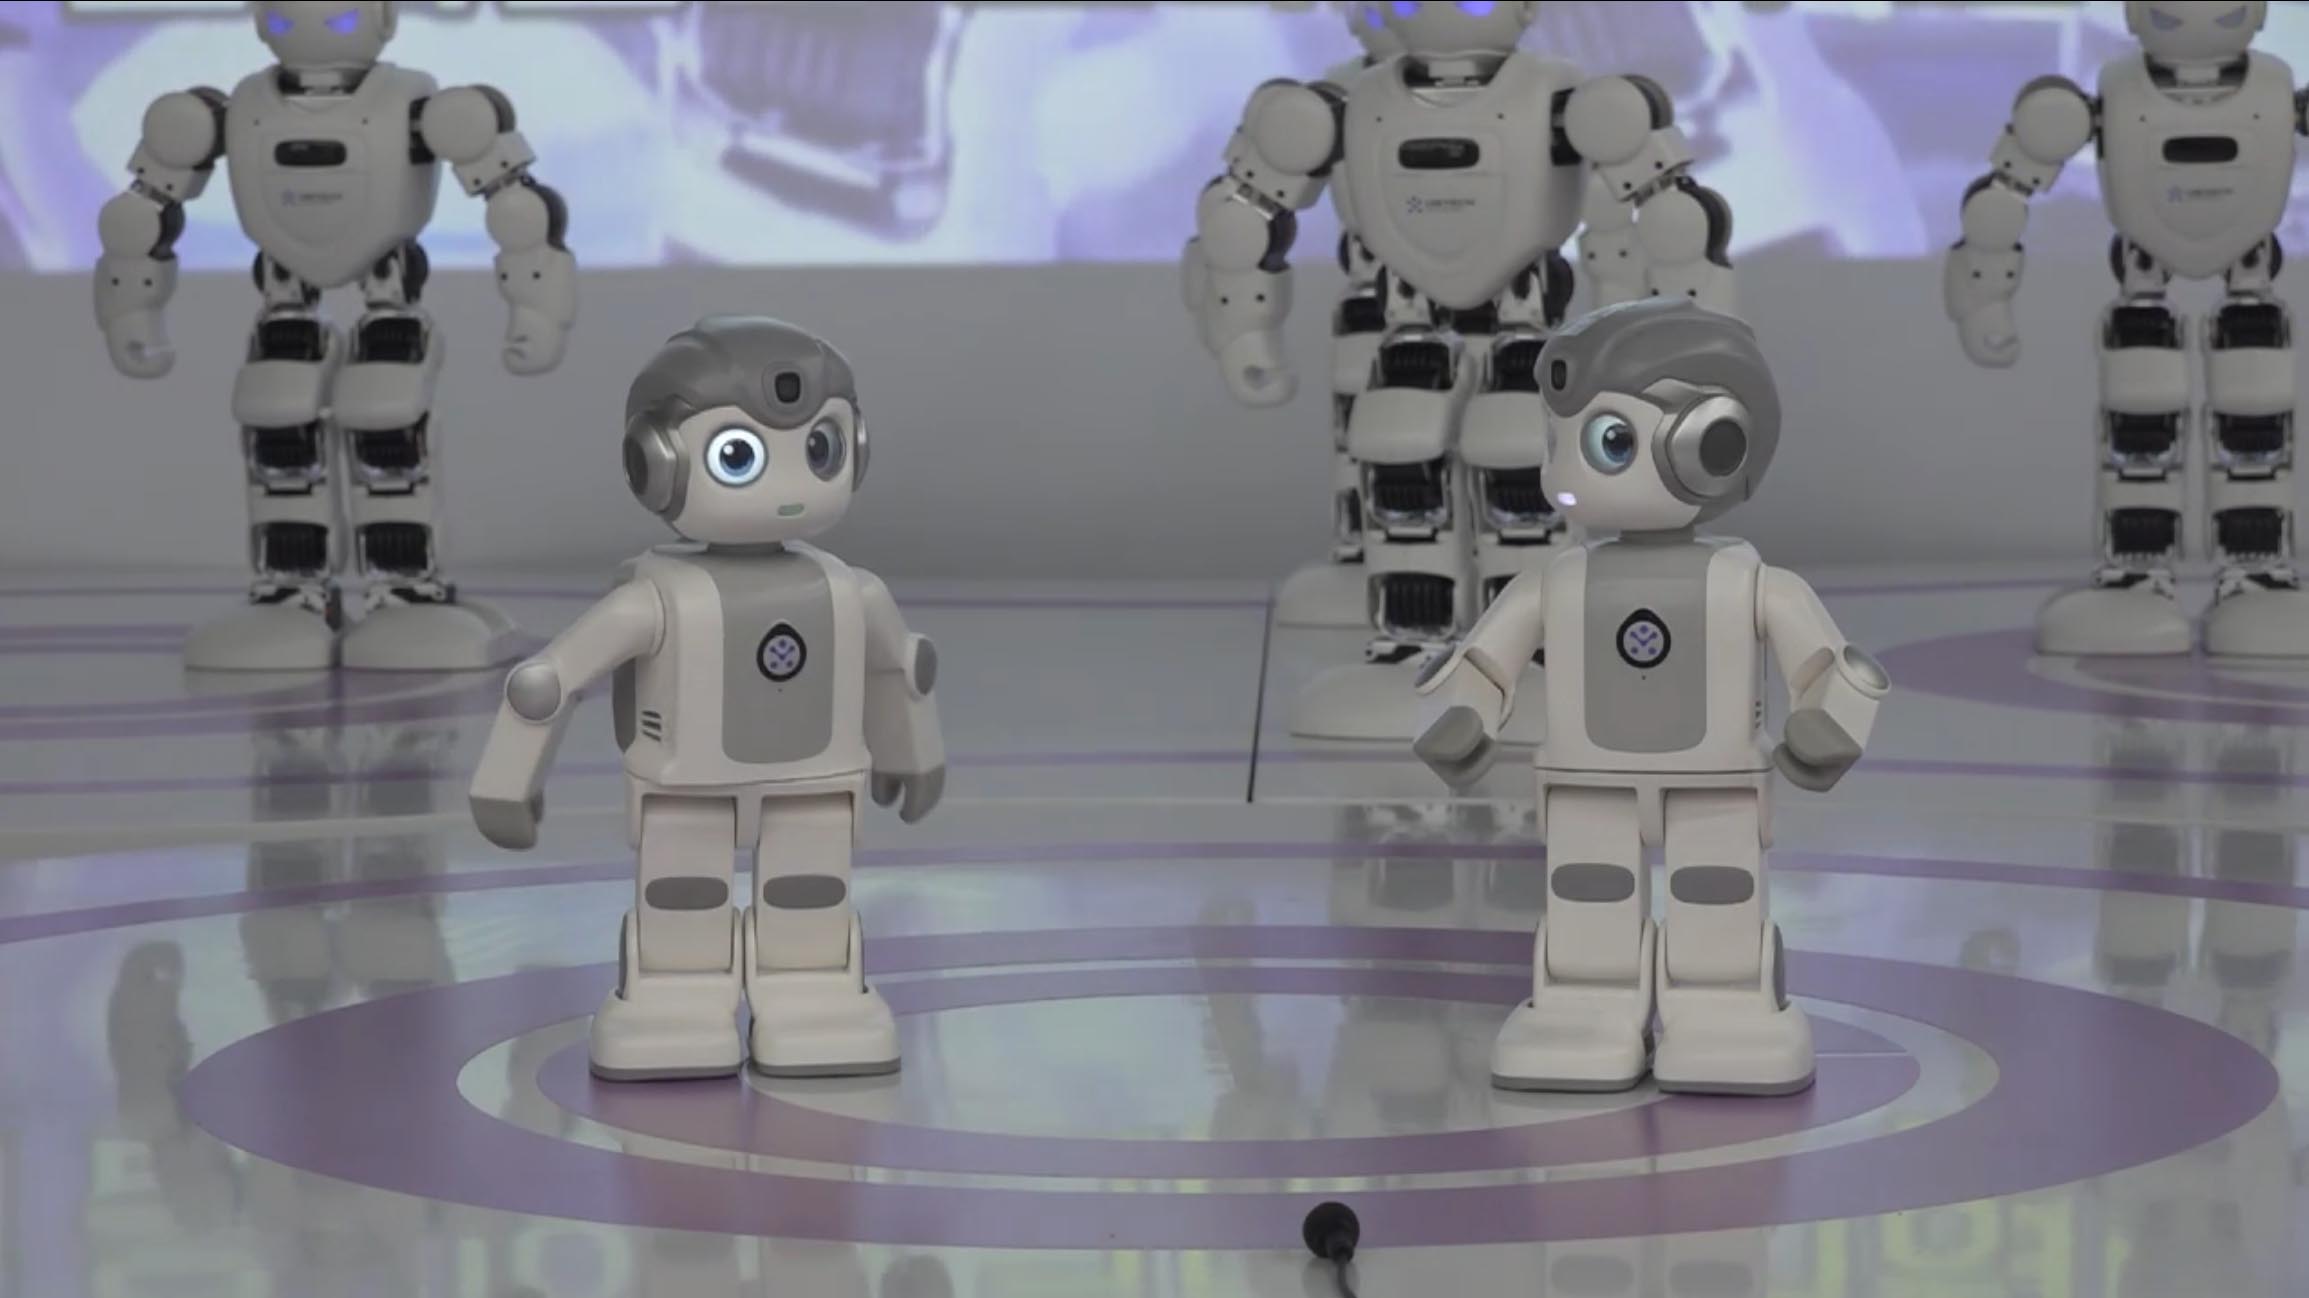 인공지능(AI) 로봇 ‘알파미니’는 춤추기, 요가 등 재미난 행동을 보여주거나 동요, 동화책 등도 들려줄 수 있습니다.